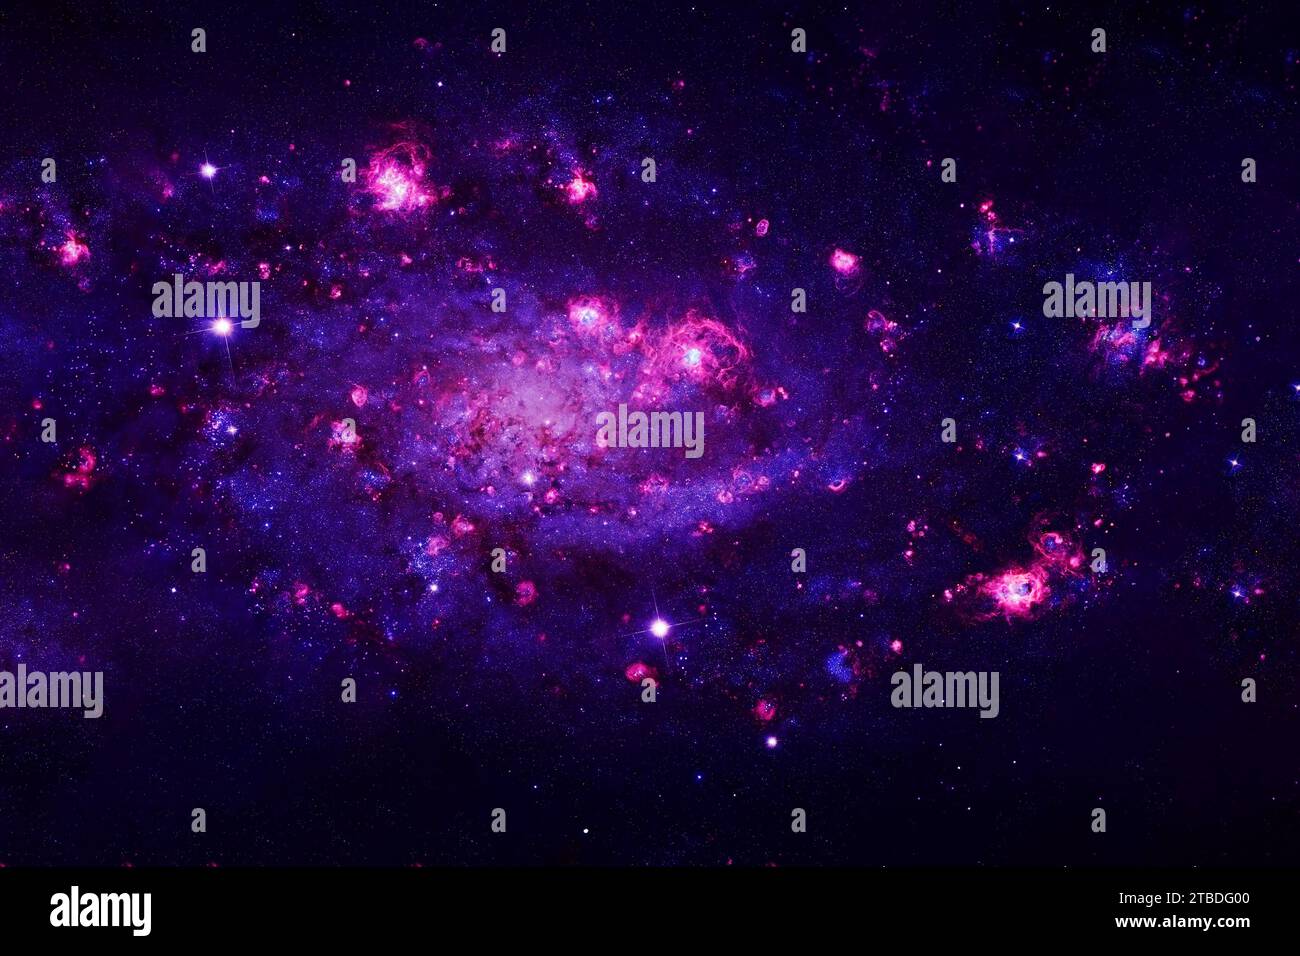 Nébuleuse cosmique bleue. Éléments de cette image fournis par la NASA. Photo de haute qualité Banque D'Images